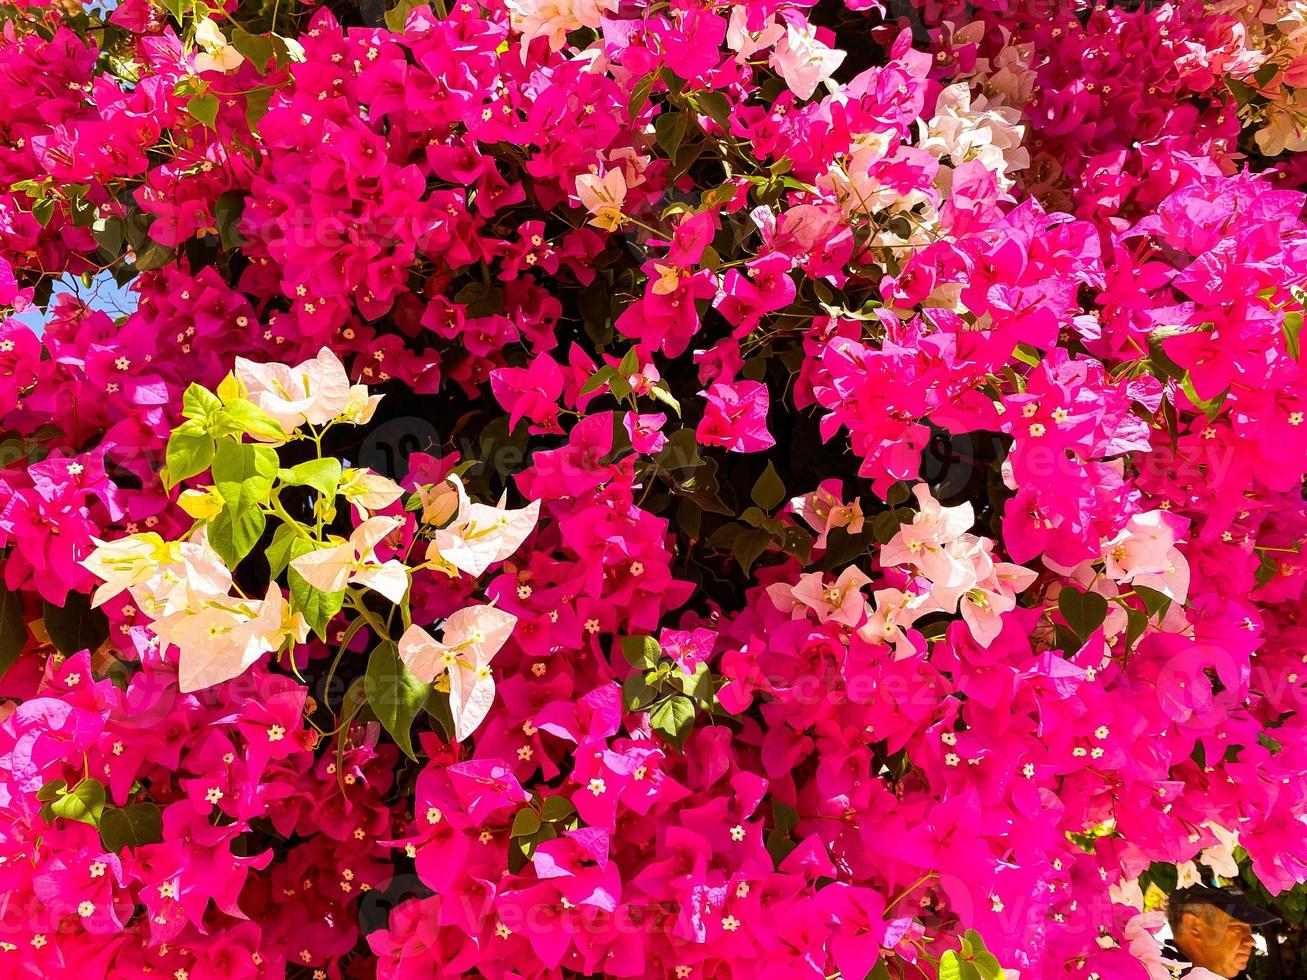 rosa små blommor på en stor och omfattande träd. vit och rosa blommor på en buske i de trädgård. exotisk växter, ljus färger foto